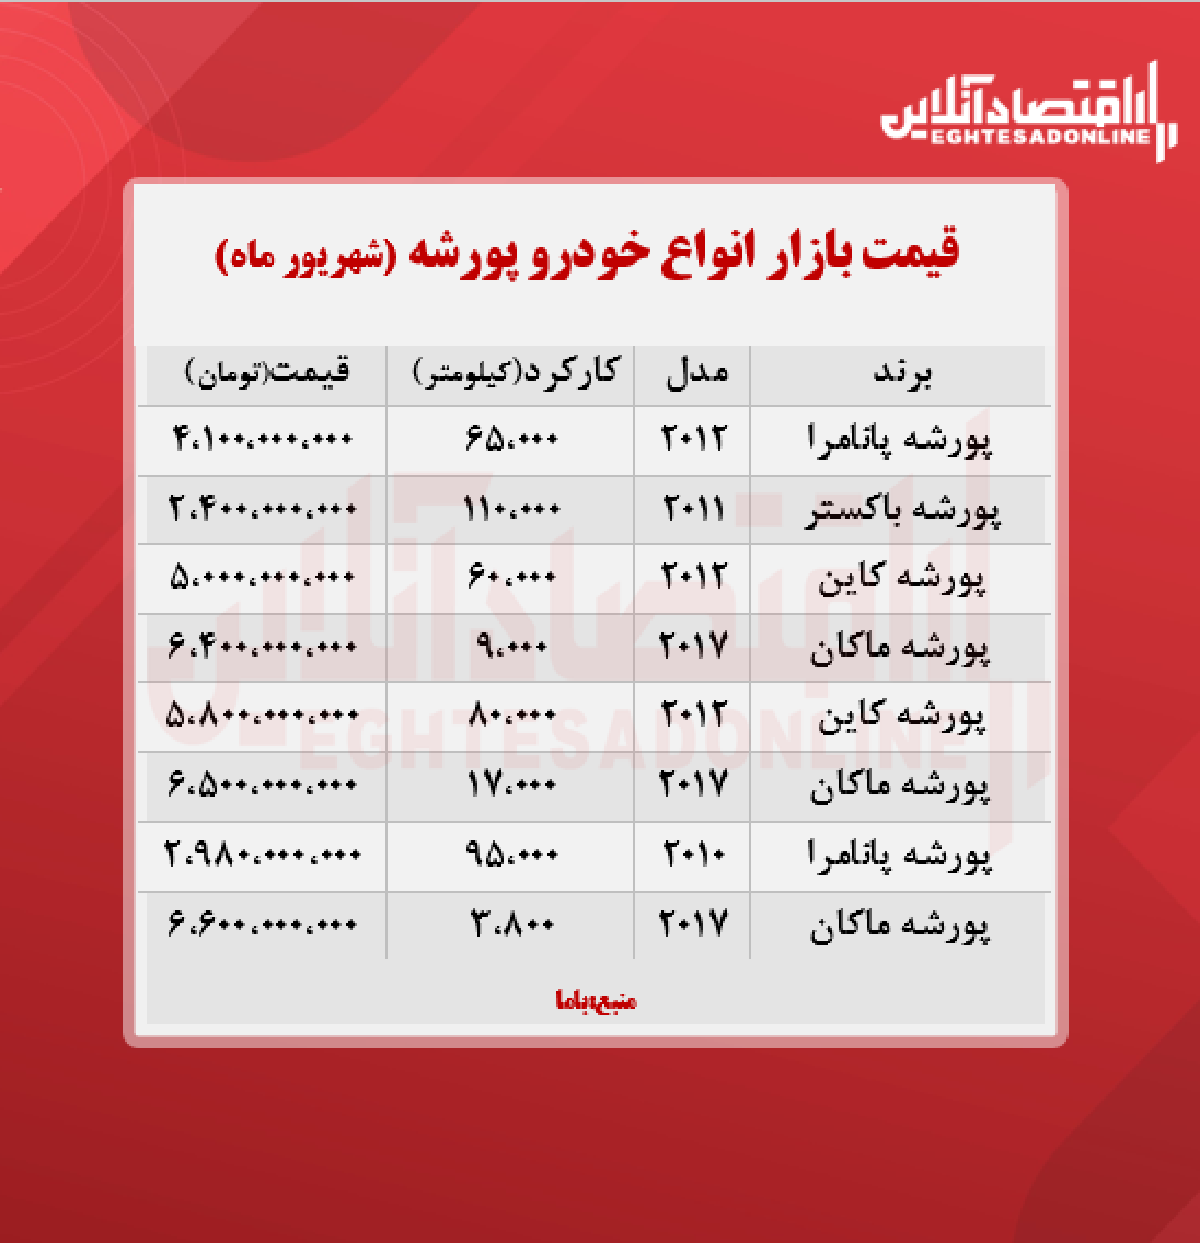 قیمت انواع پورشه در تهران + جدول